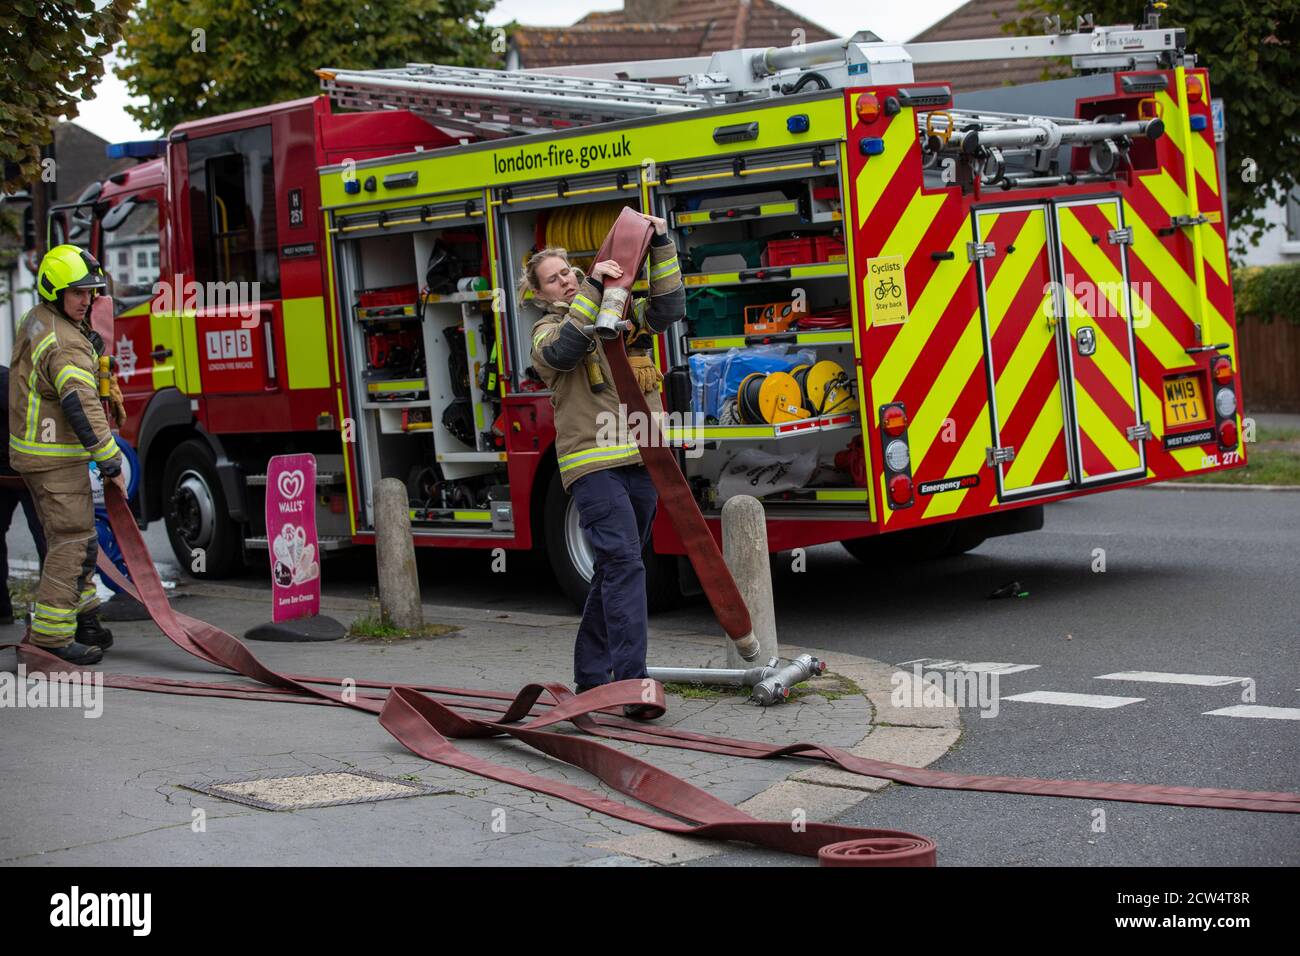 Die Feuerwehrfrau rollt den Schlauch mit der Londoner Feuerwehr aus, die an einem Hausbrand in einer Wohnstraße in South London, England, Großbritannien teilnimmt Stockfoto